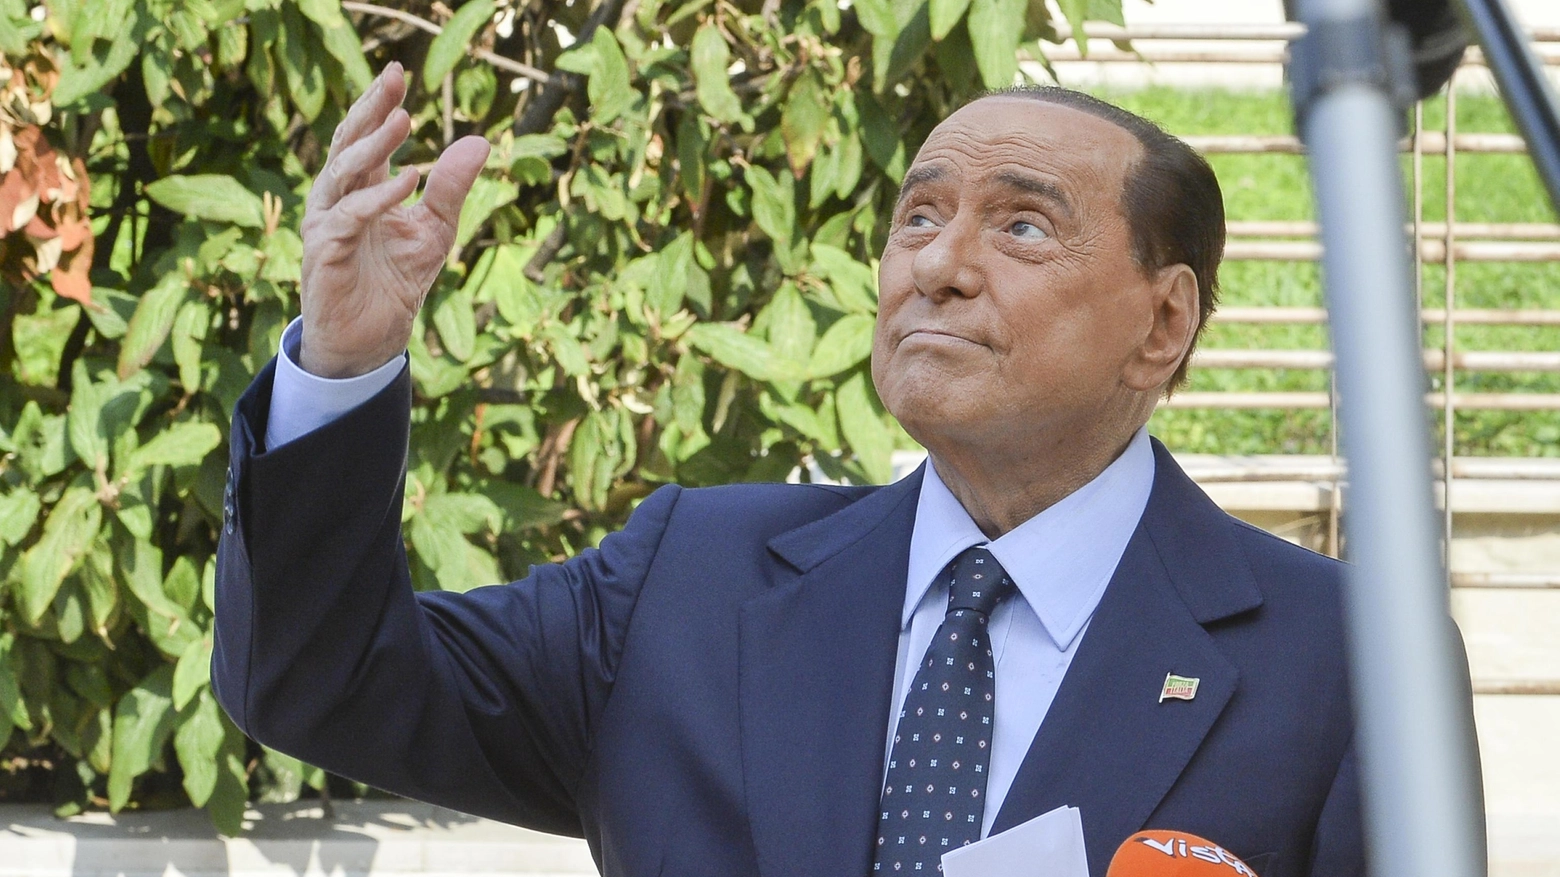 Una messa per Silvio Berlusconi: l'ha chiesta un fedele suo fan